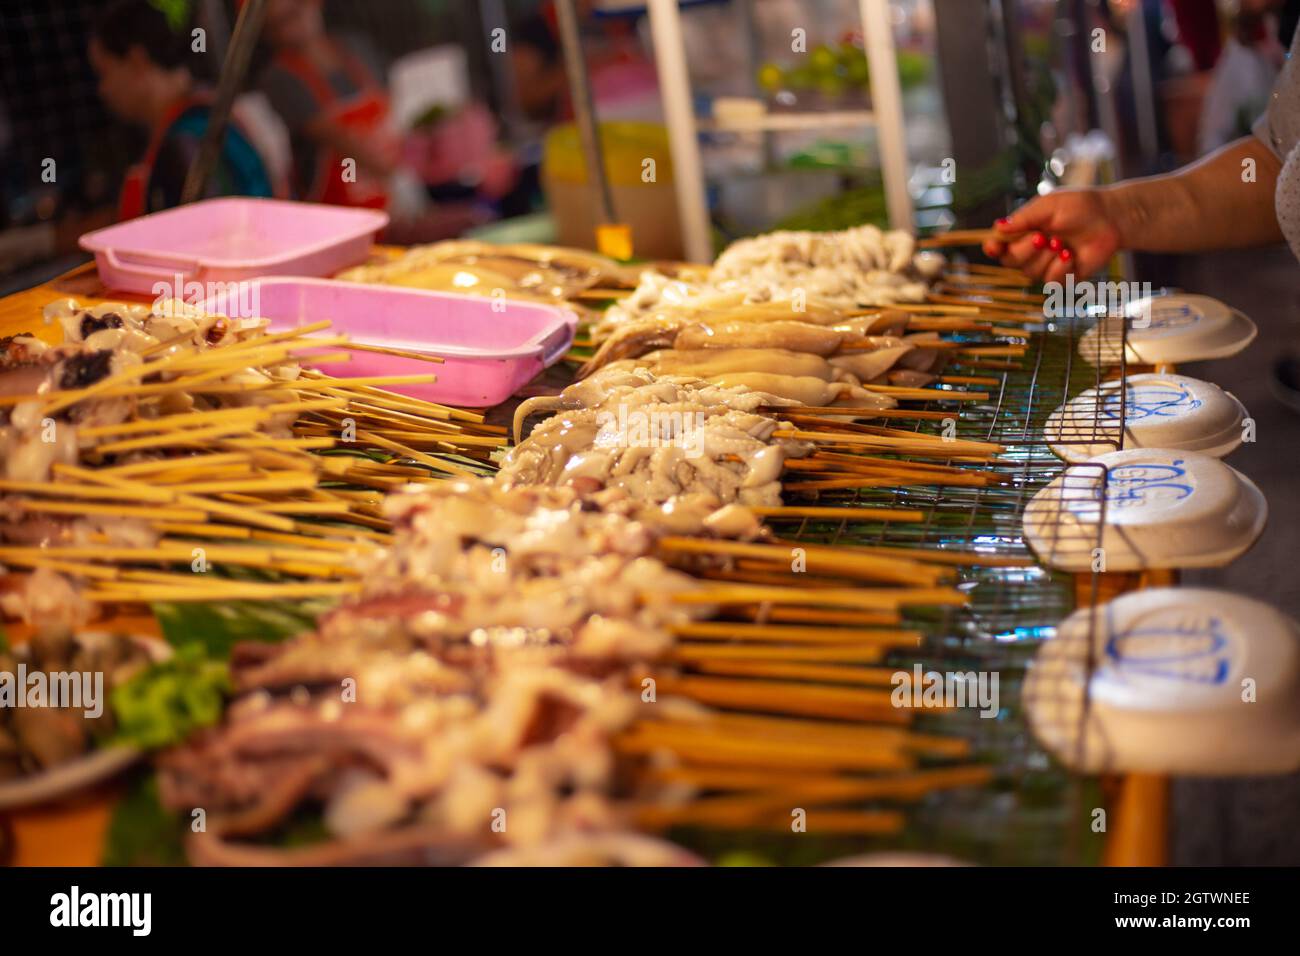 Fruits de mer sur brochettes pour griller au marché nocturne, cuisine thaïlandaise traditionnelle Banque D'Images